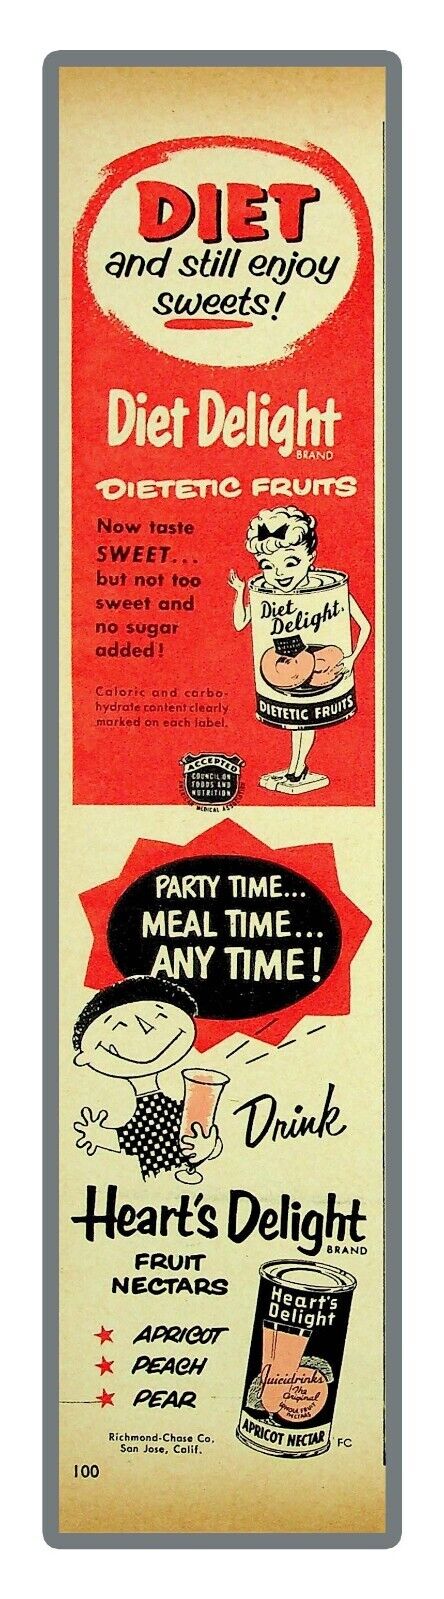 Diet Delight Fruit Heart's Delight Drinks Fruit Nectars 1954 Vintage Print   Ad